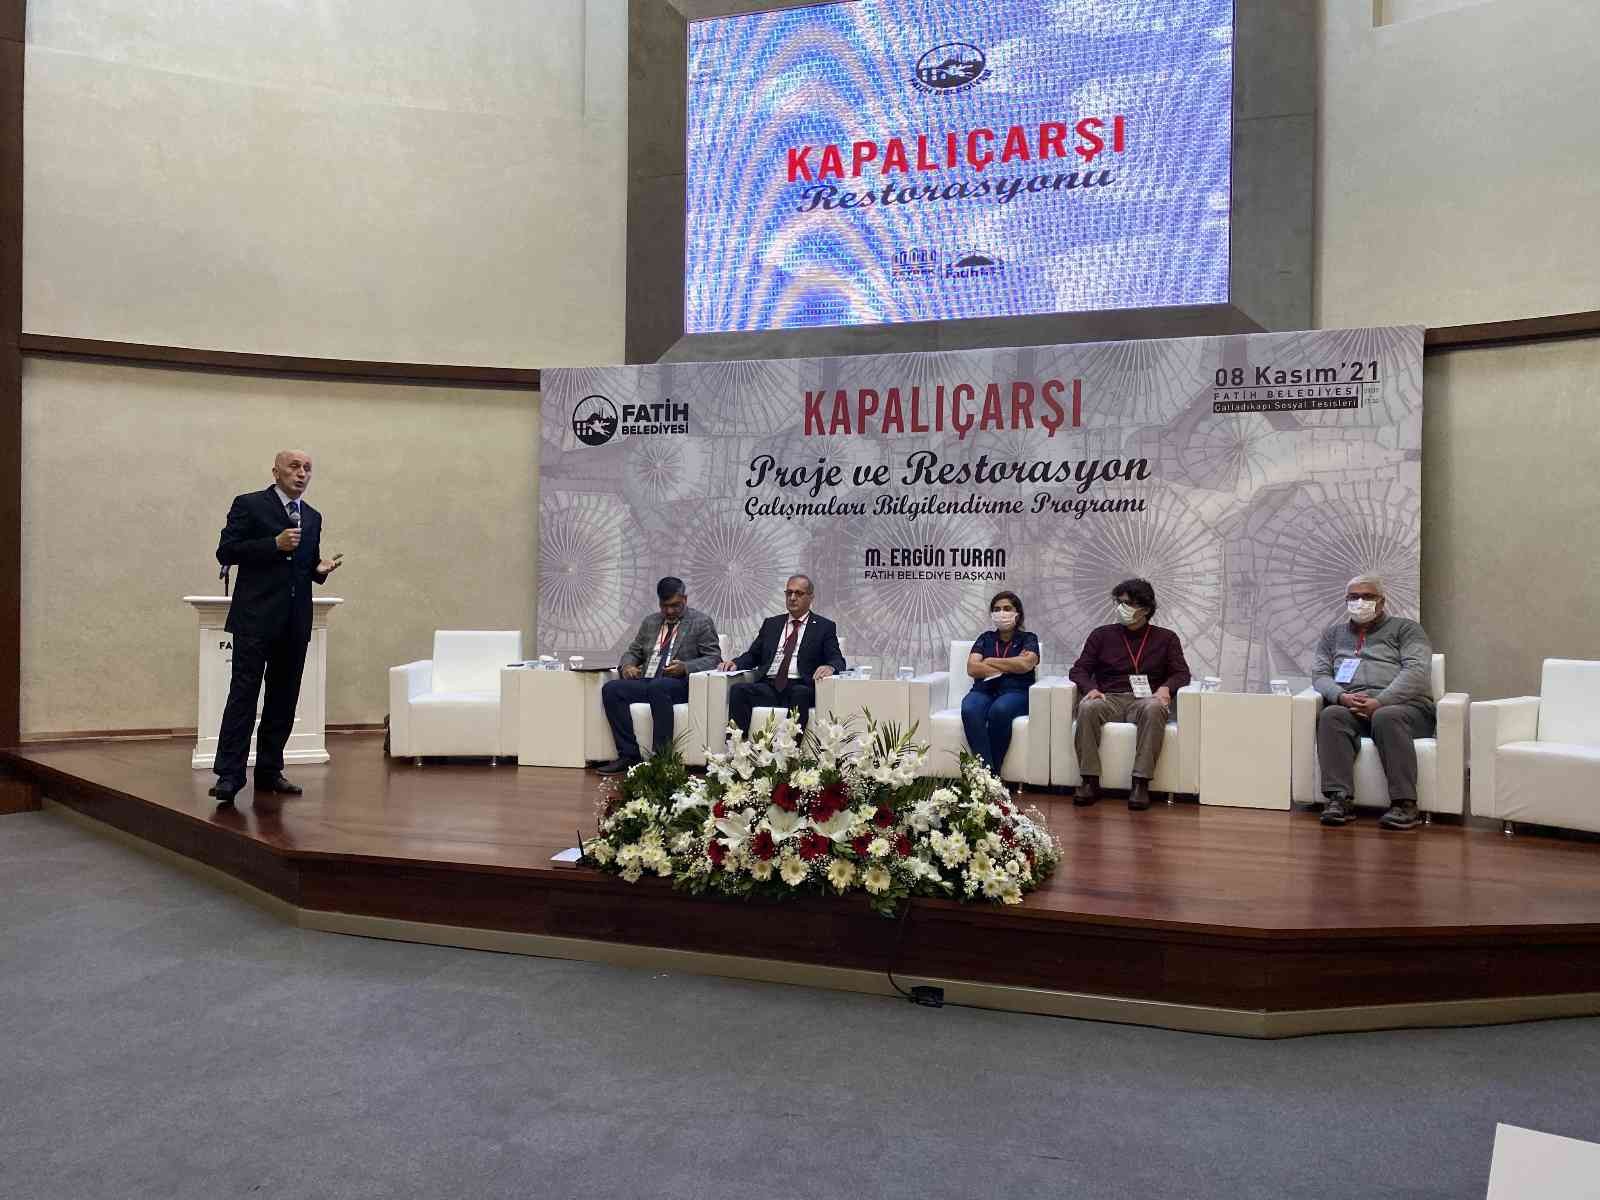 Başkan Turan: “2022’nin 6’ncı ayının sonunda Kapalıçarşı’daki restorasyonu tamamlamış olacağız” #istanbul